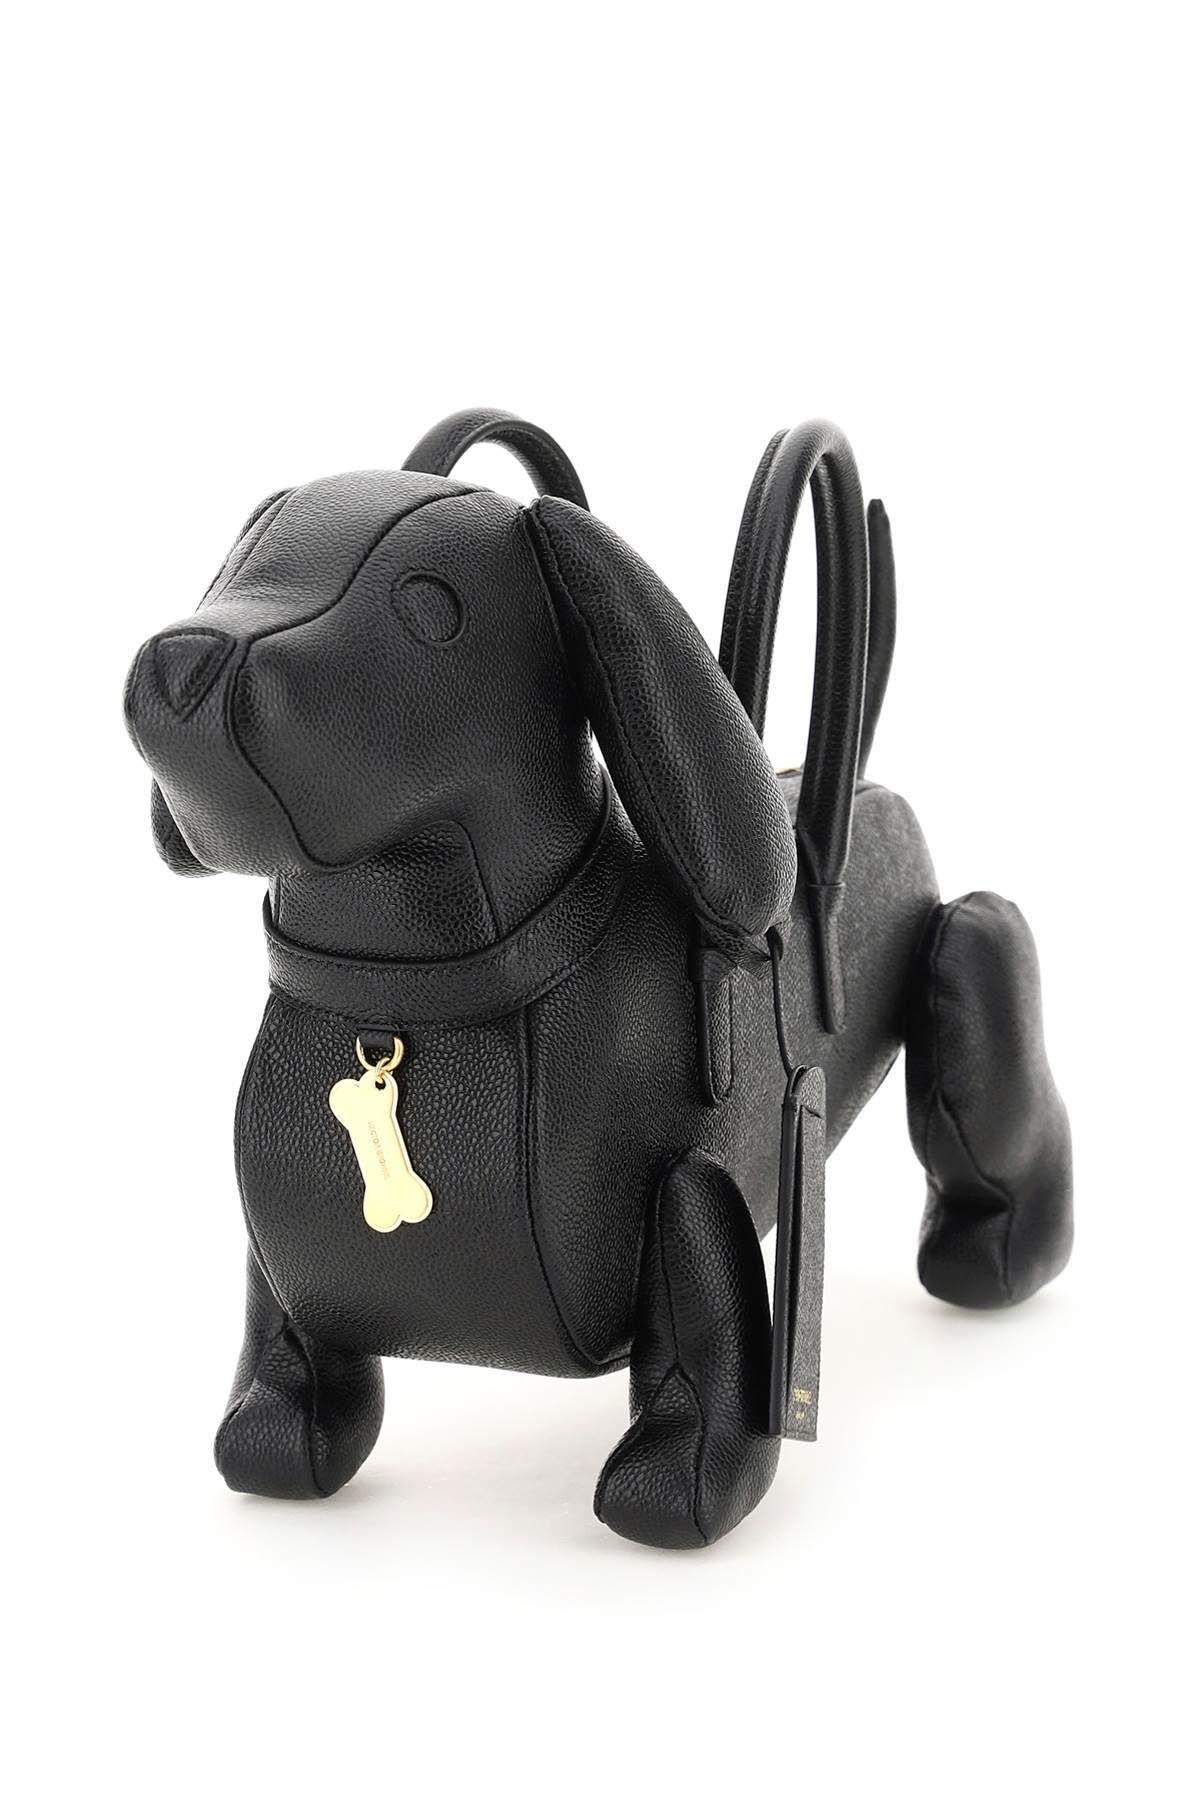 Thom Browne Hector Dog Shaped Shoulder Bag in Black